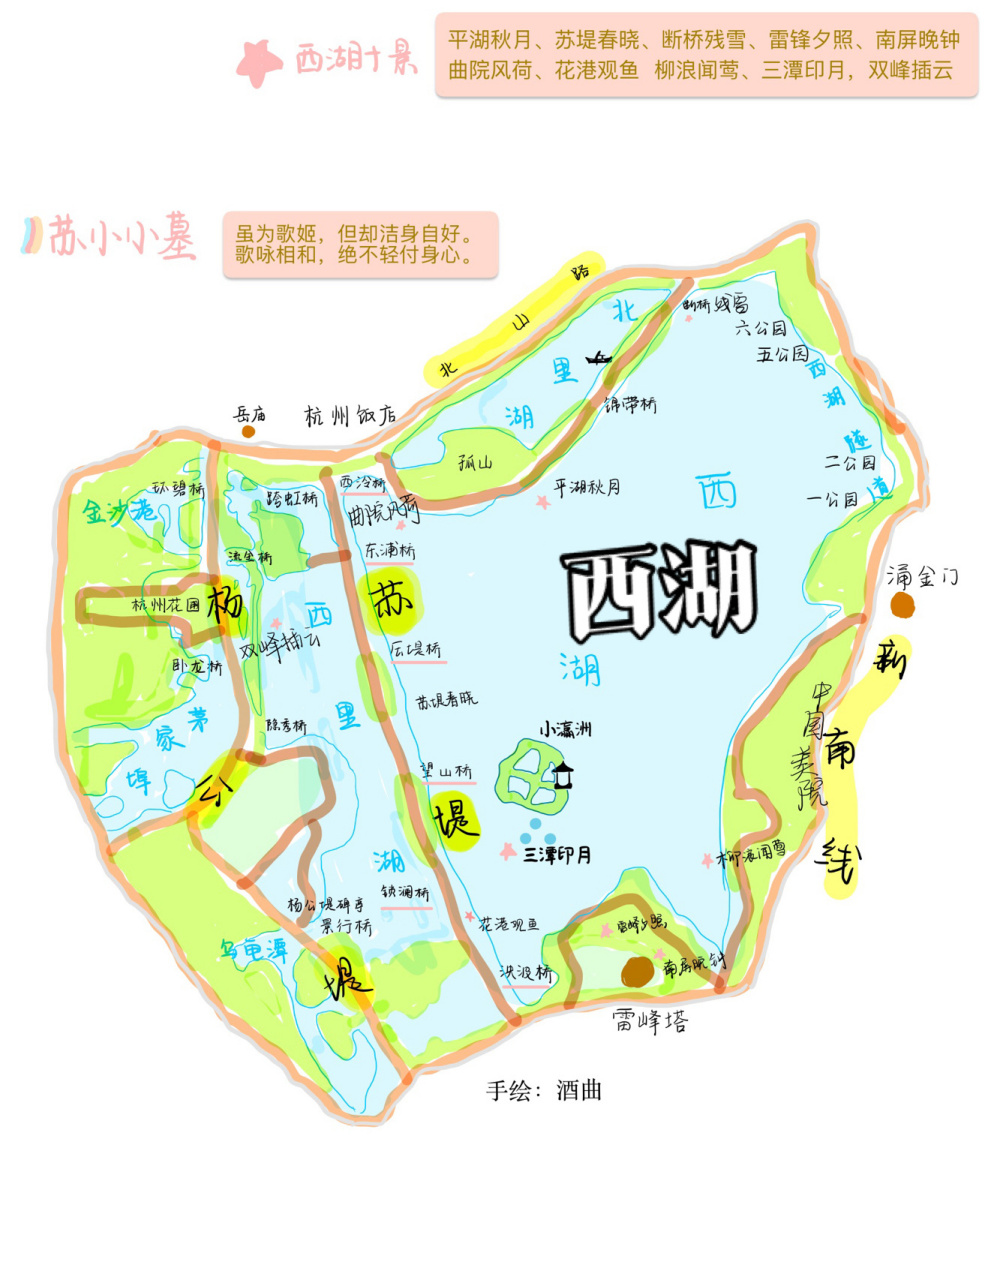 西湖地图 杭州美食(附地图和部分景区介绍 这是当时计划去杭州旅游的